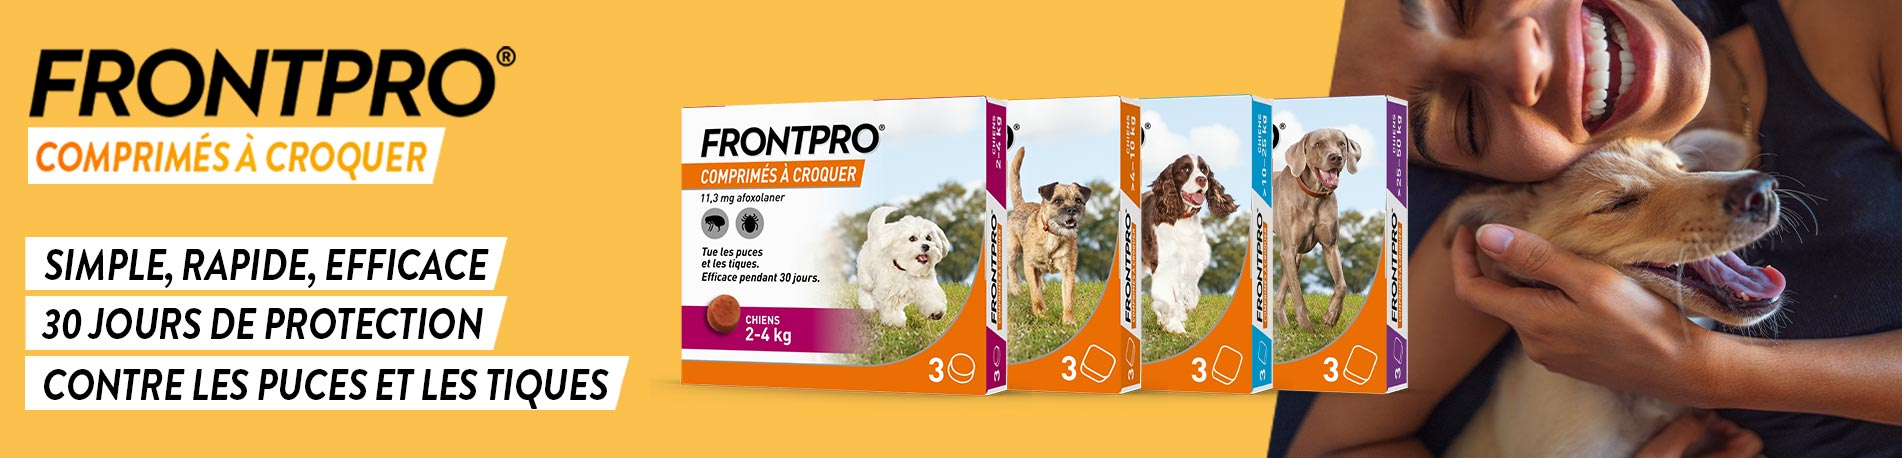 Frontpro, votre comprimé anti-puces et anti-tiques pour chien